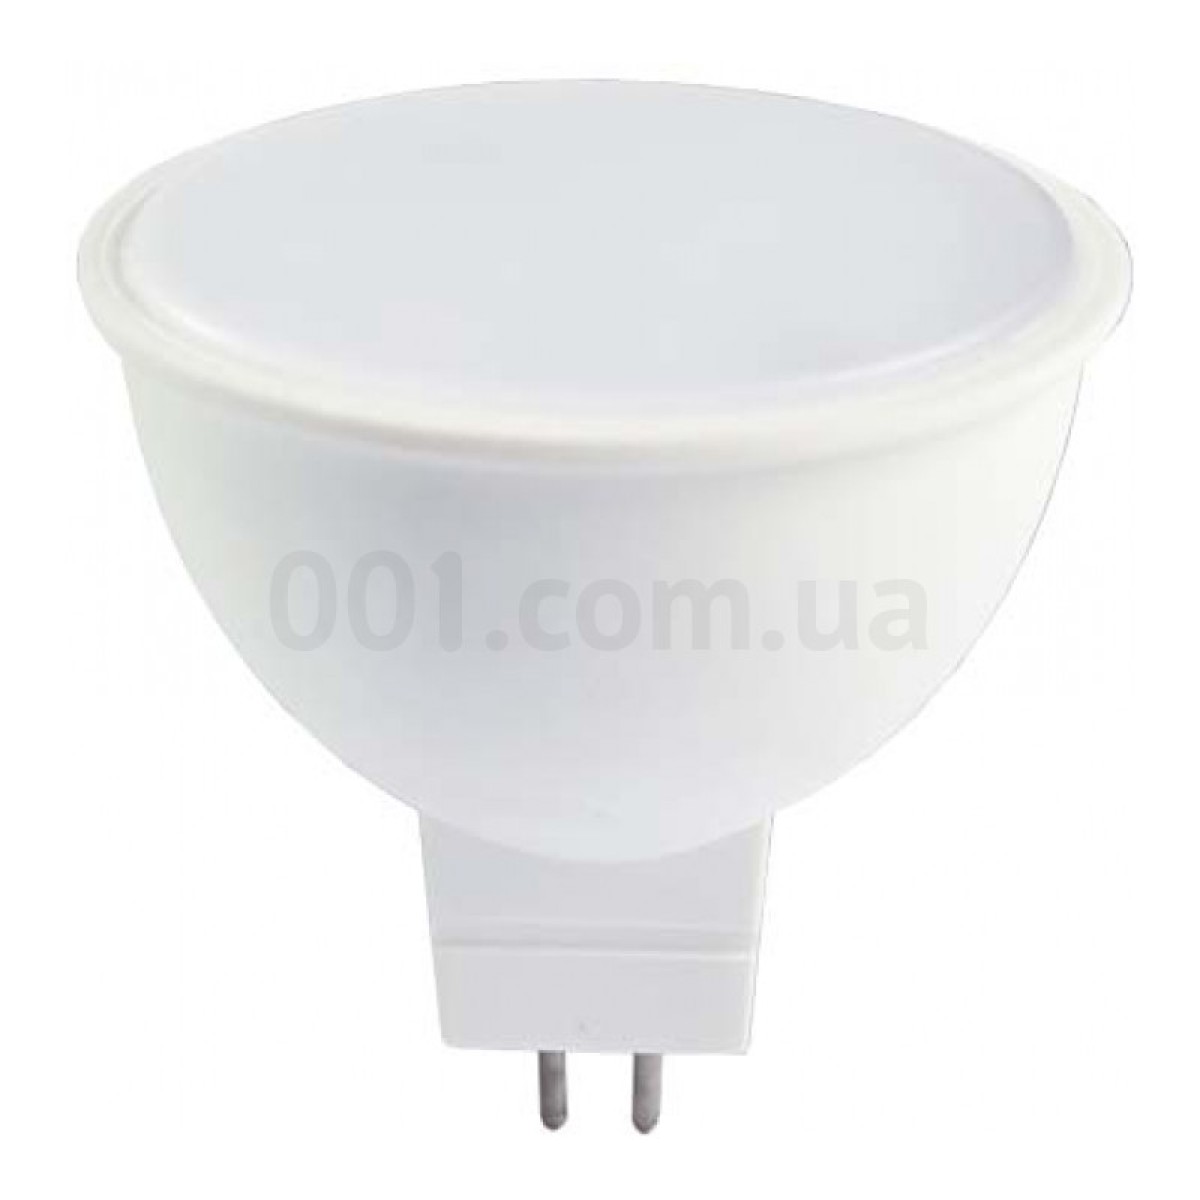 Світлодіодна лампа LB-716 MR16 6Вт 6400K G5.3, Feron 256_256.jpg